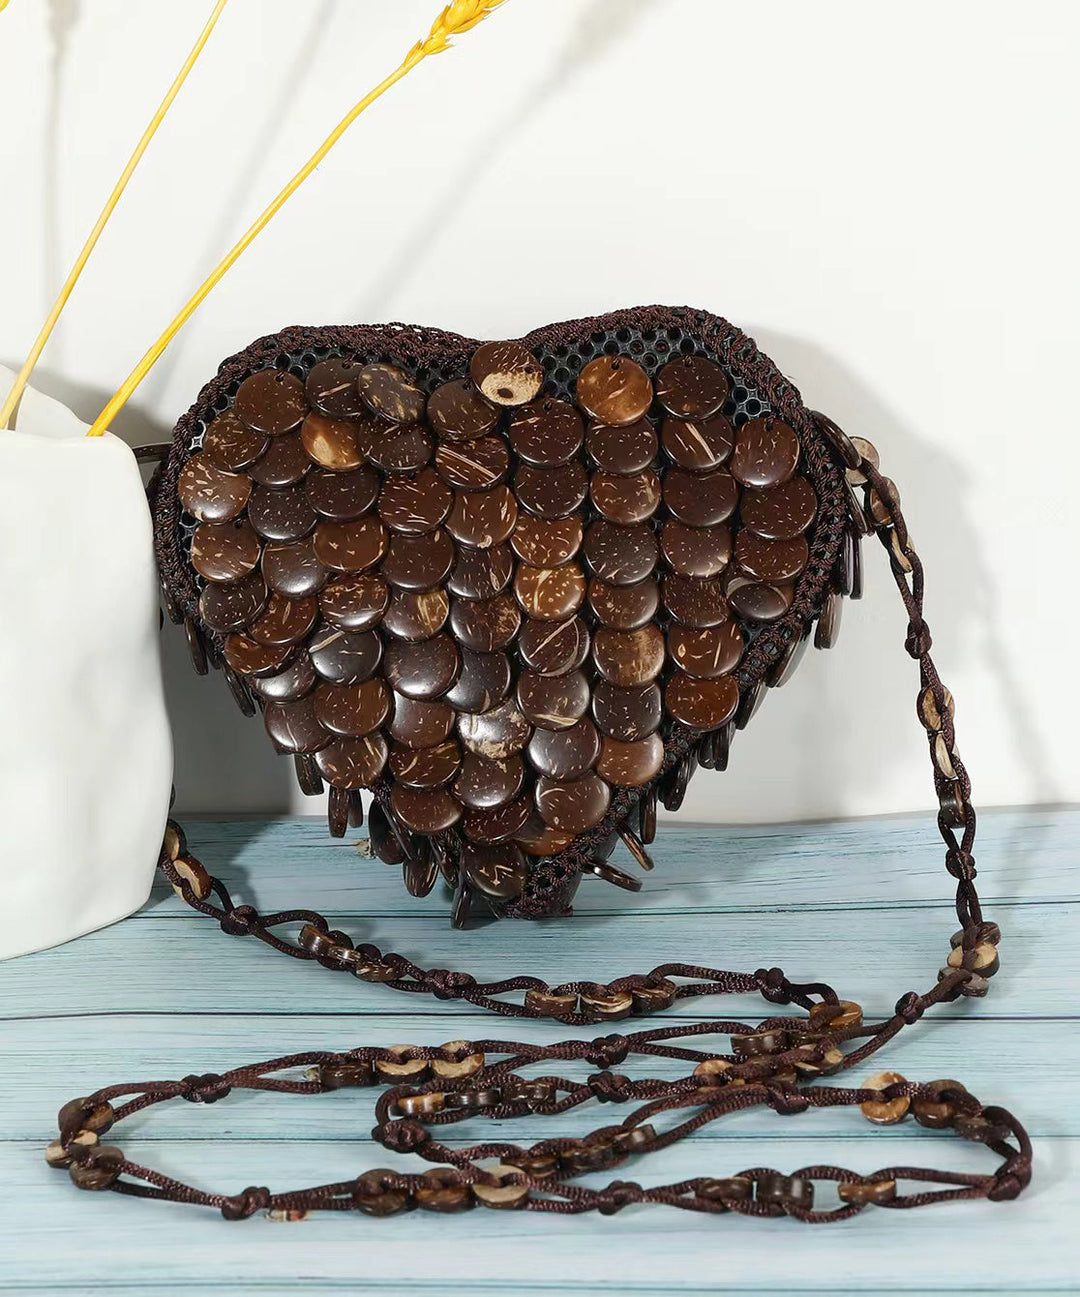 Bohemian Heart Handmade Beaded Diagonal Cross Bag